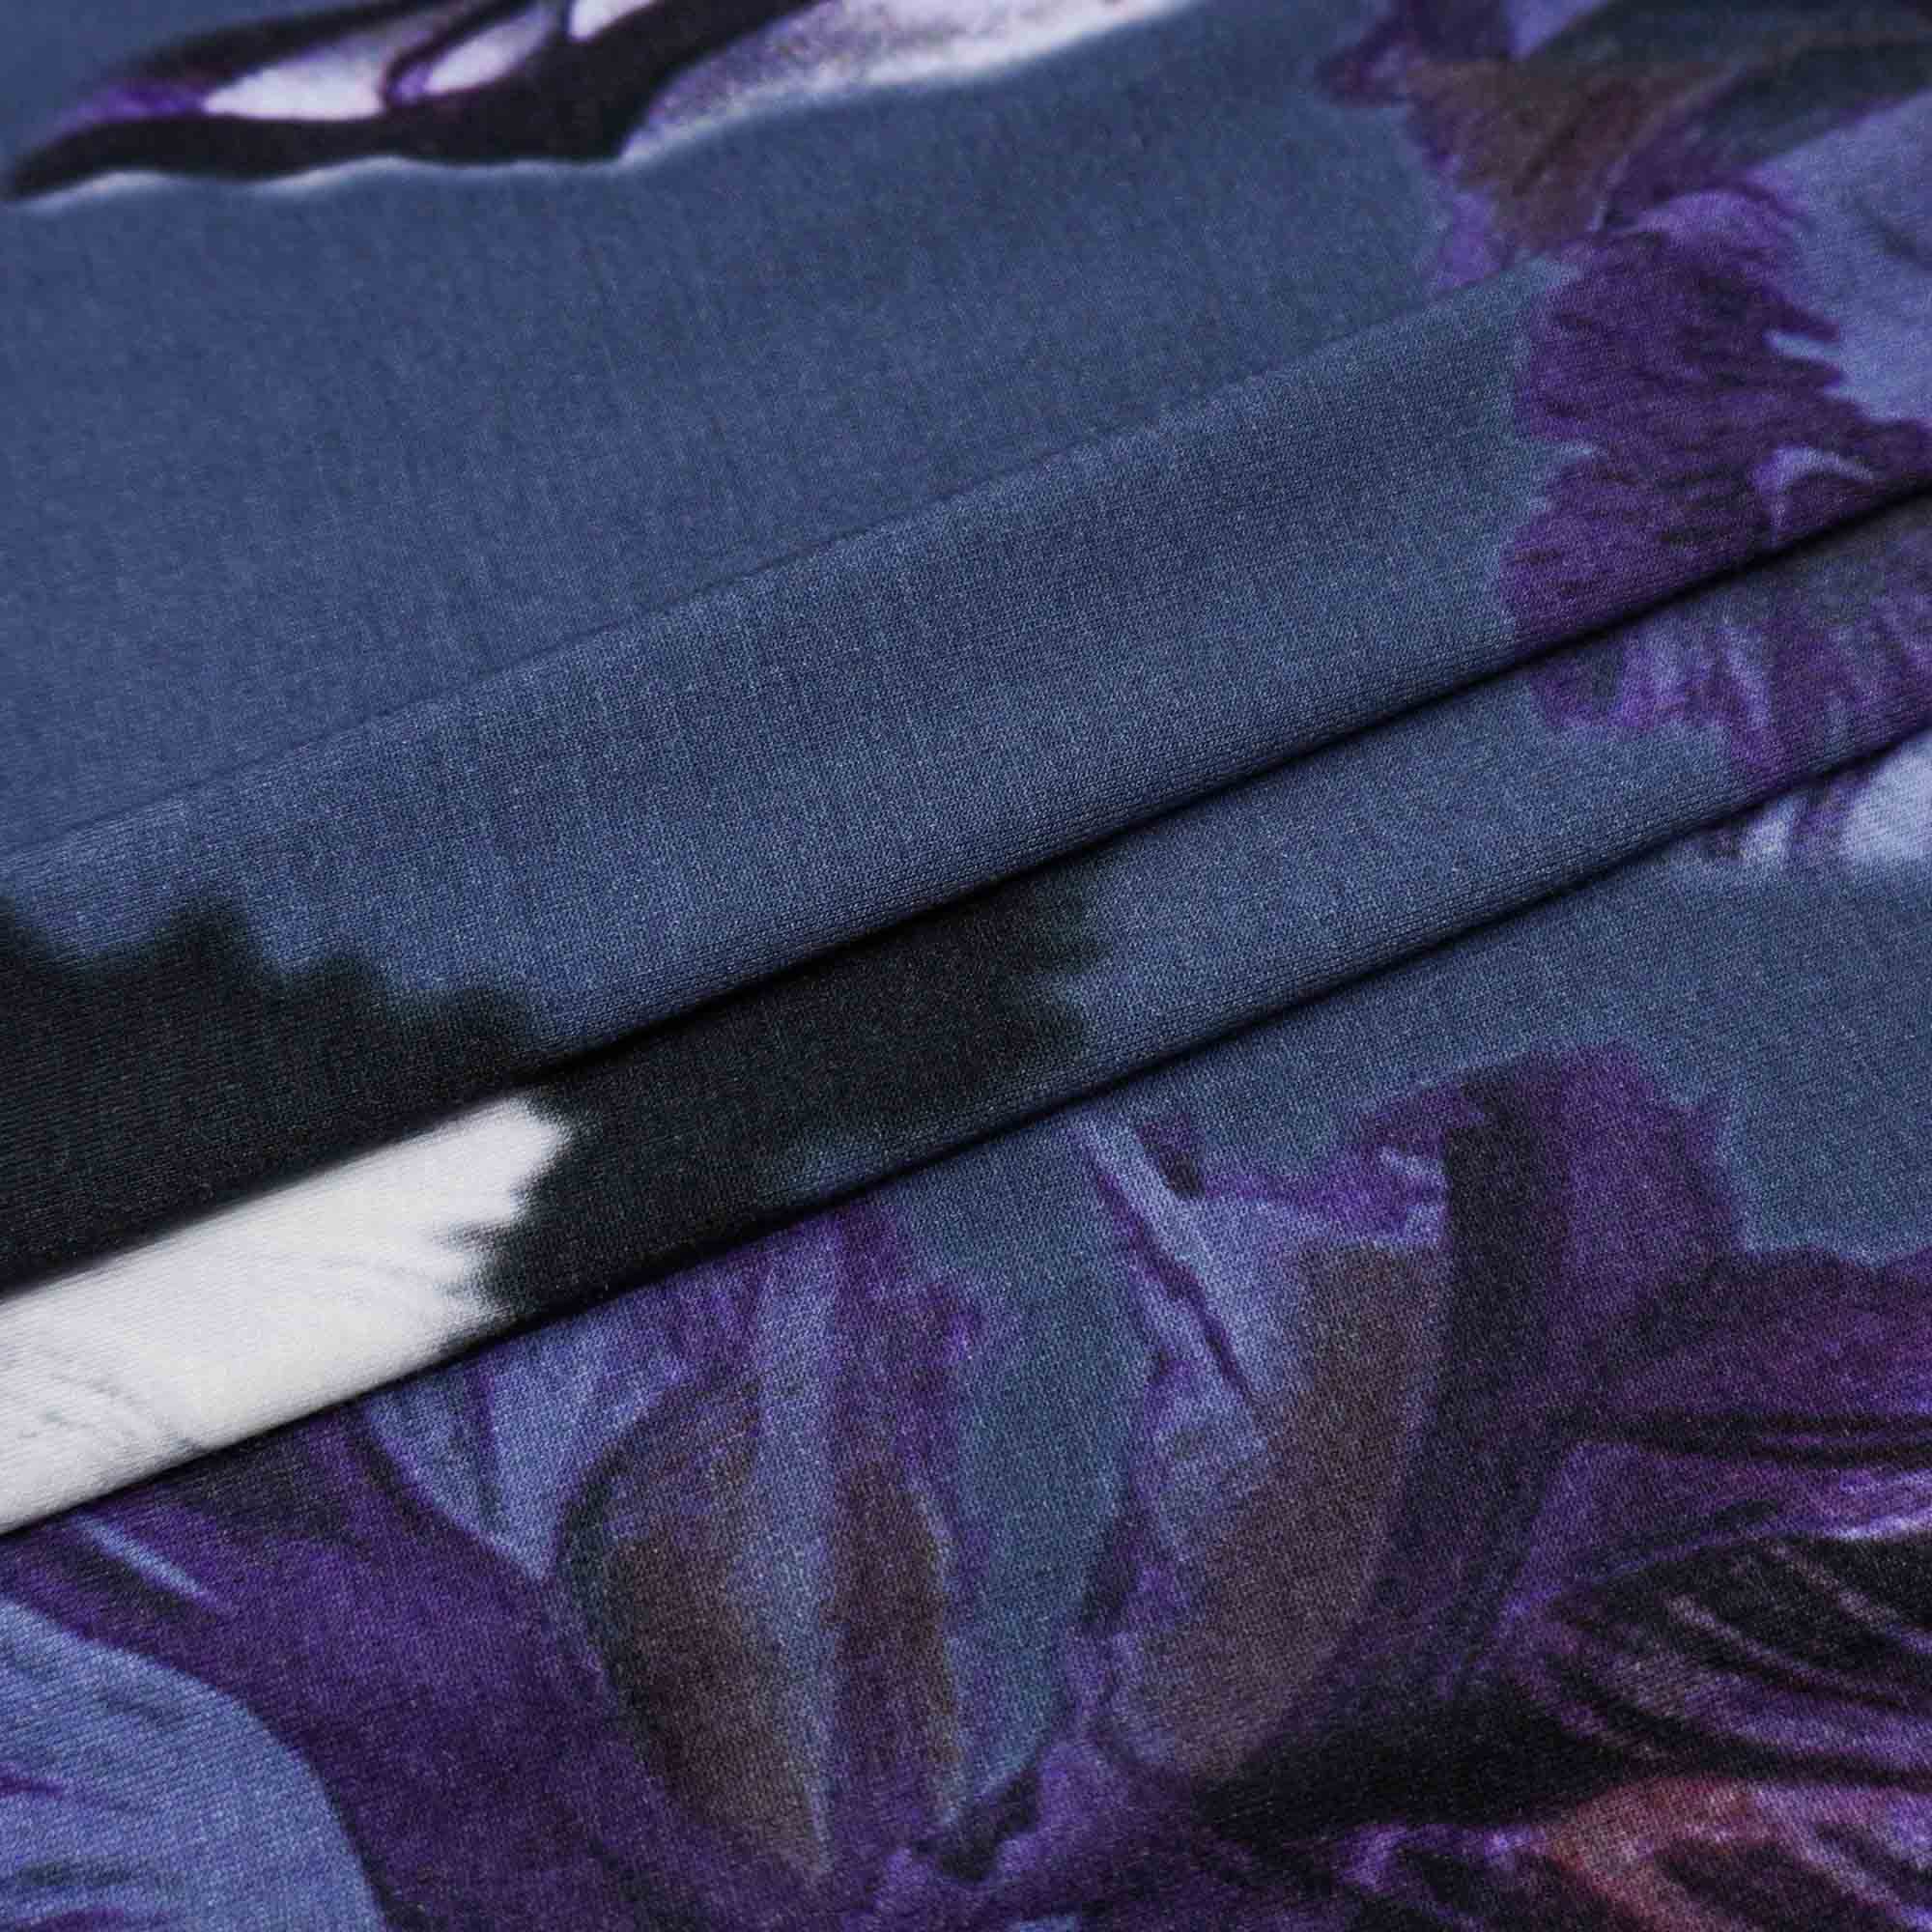 Tecido viscolycra azul marinho estampado floral (tecido italiano legítimo)